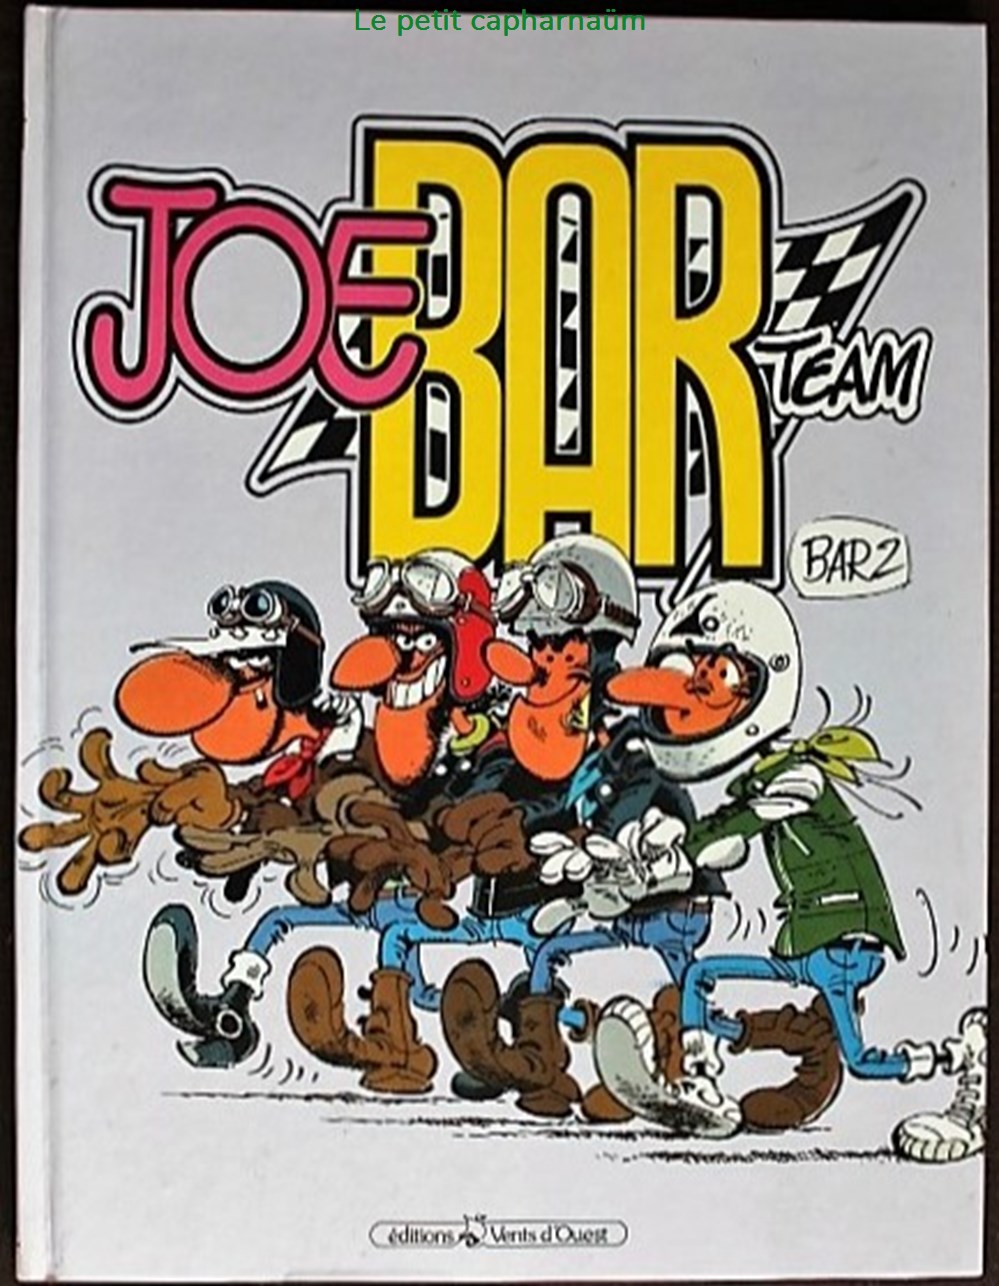 BD - Joe Bar Team - Coleção de Livros, História em quadrinhos, Revistas